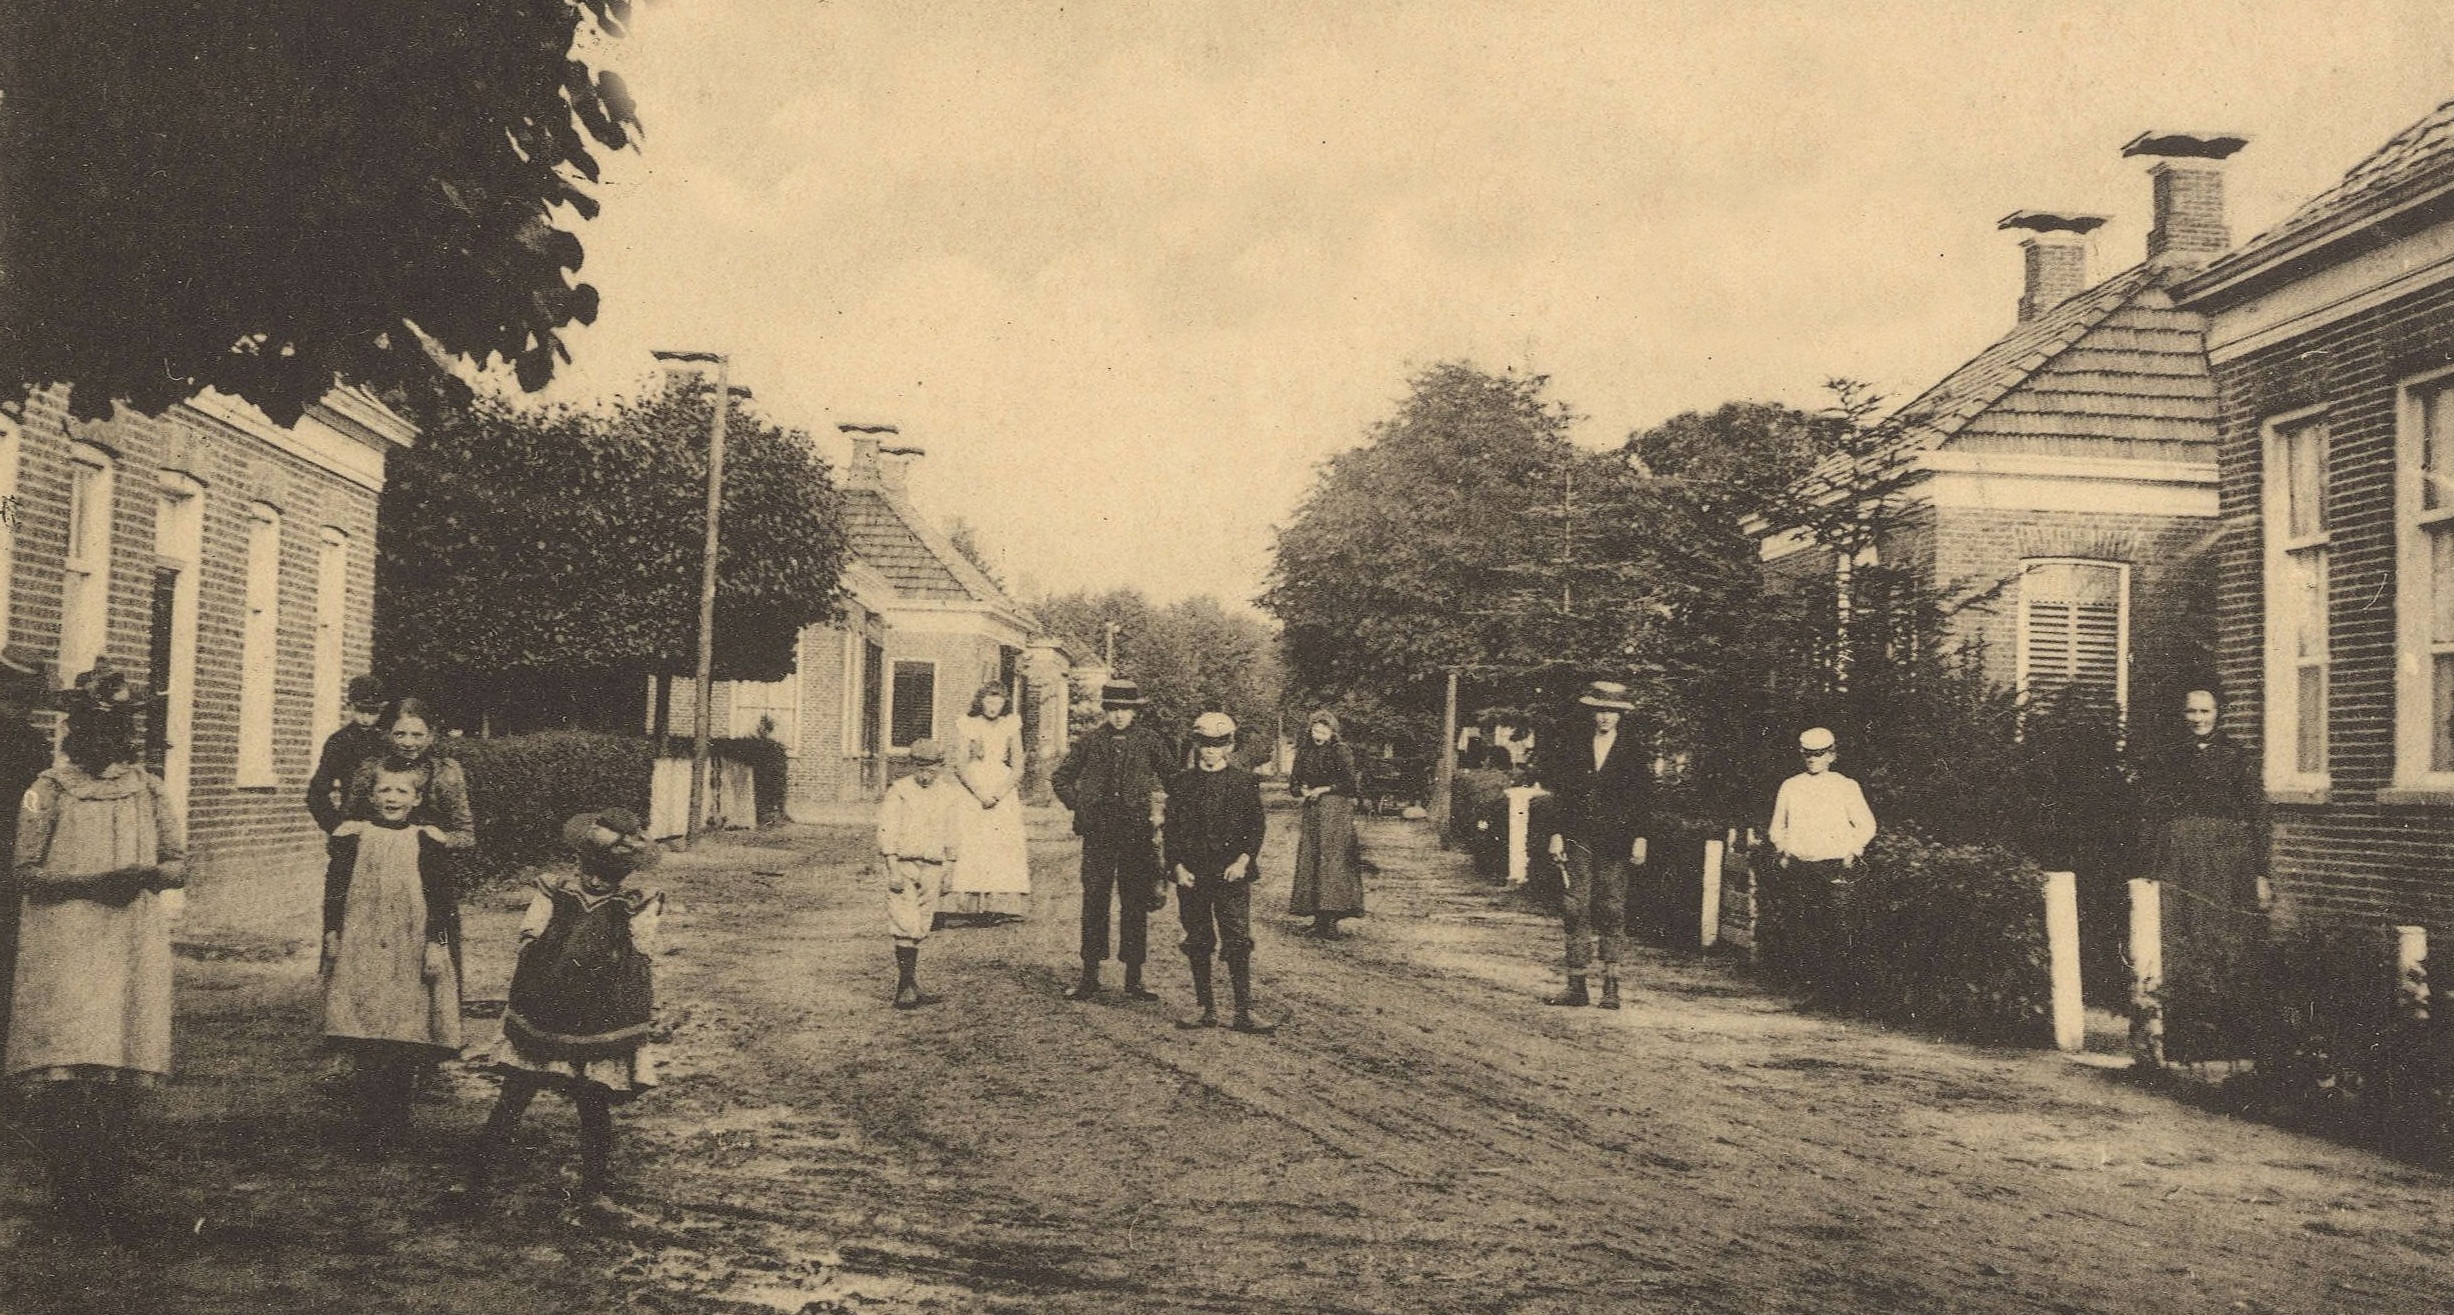 Ansichtkaart dorpsgezicht Siddeburen, 1900-1905. Bron: RHC GA, Groninger Archieven, Beeldbank Groningen.